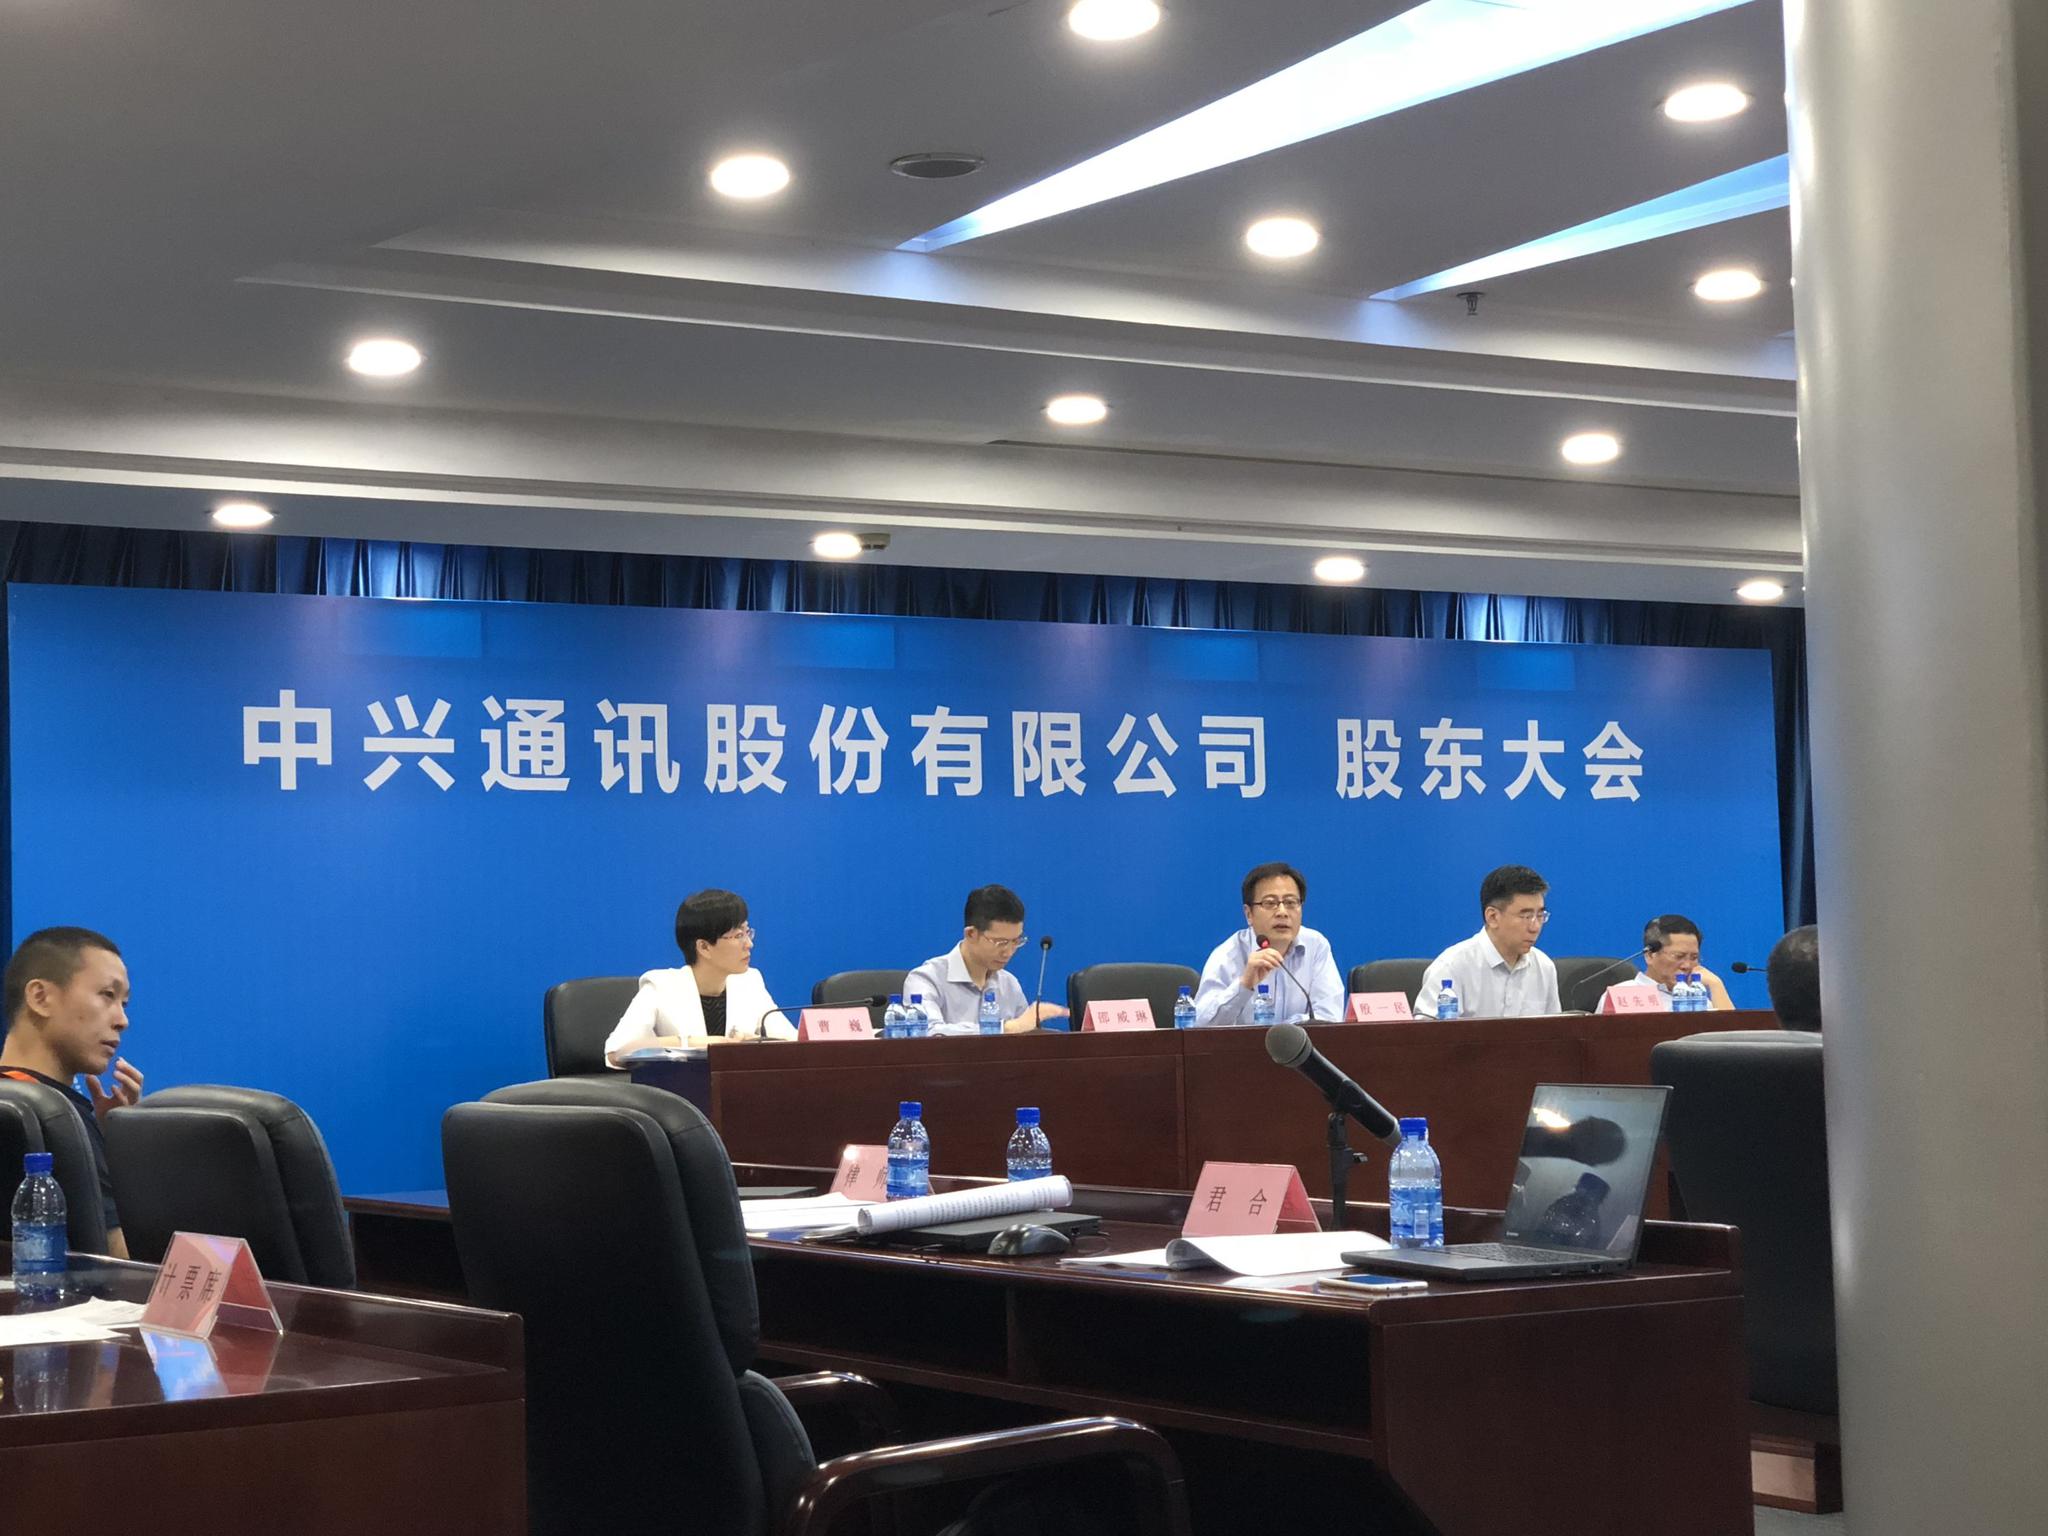 优享资讯 | 中国5G大厂中兴通讯传裁员 与华为同被欧美制裁